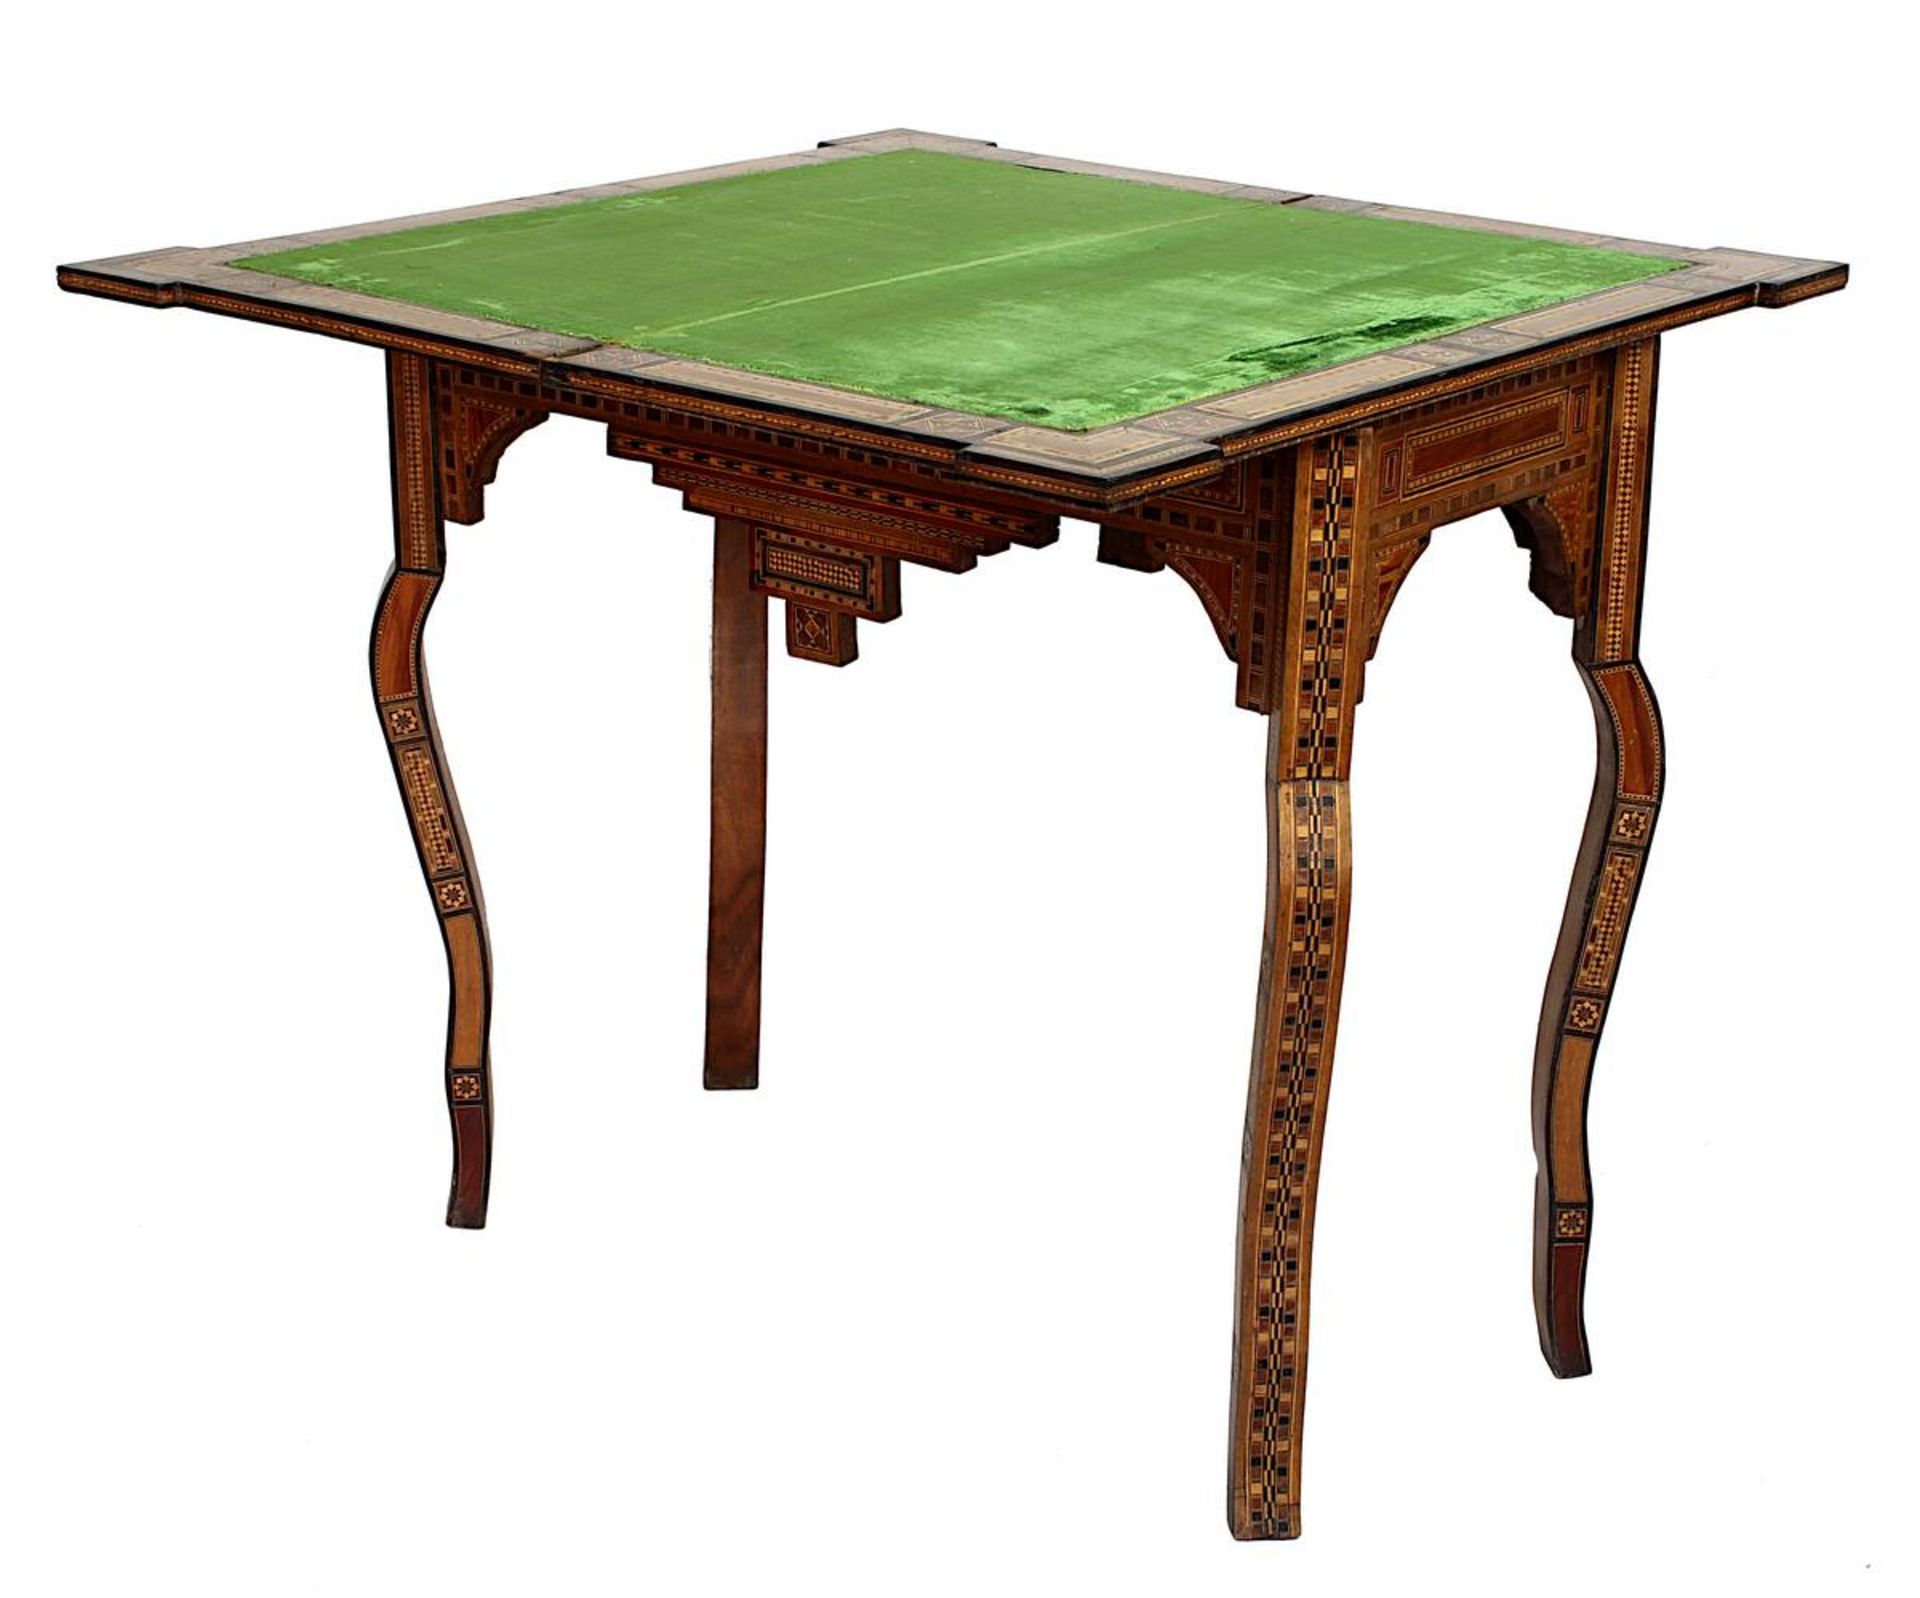 Spieltisch, Naher Osten, 2. H. 20. Jh., exotisches Holz, reich intarsiert mit Perlmuttintarsien u. - Bild 2 aus 3